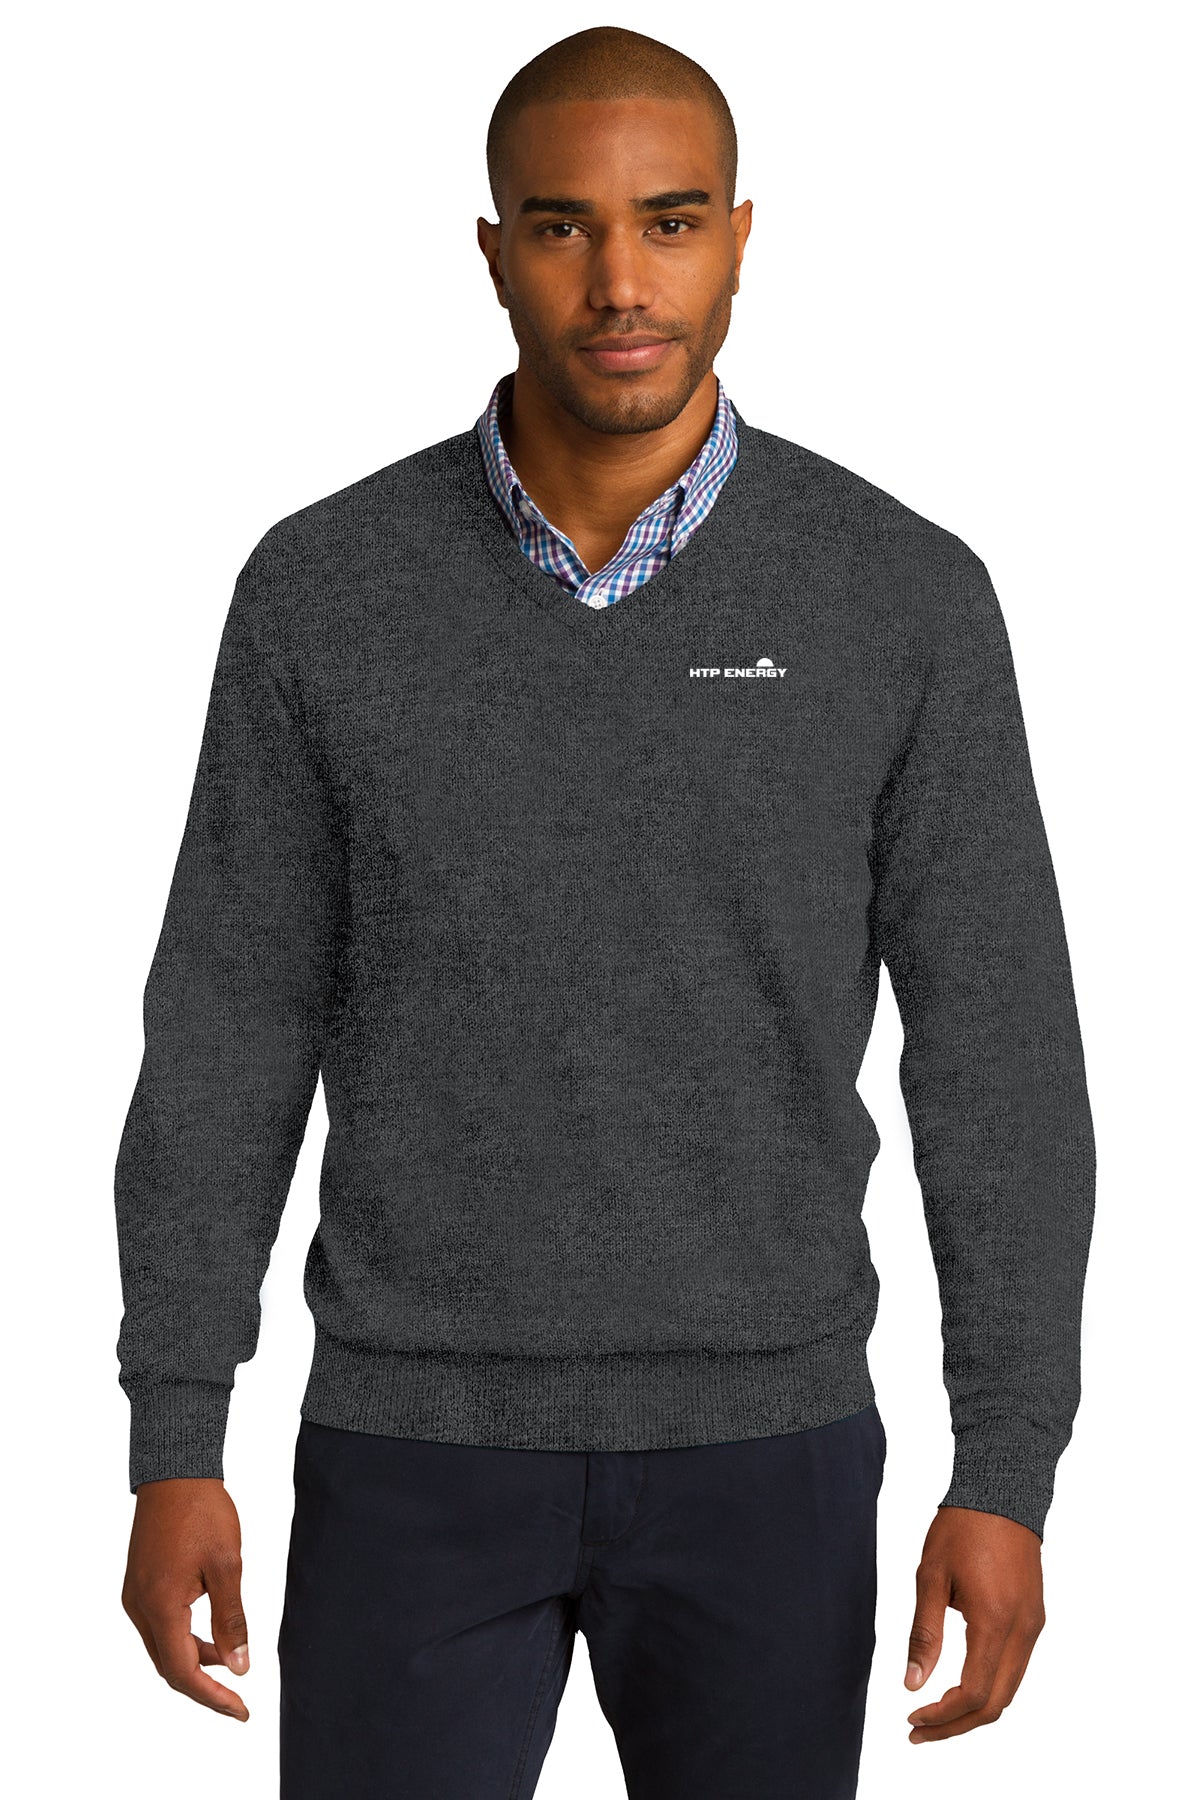 HTP Energy V-Neck Sweater